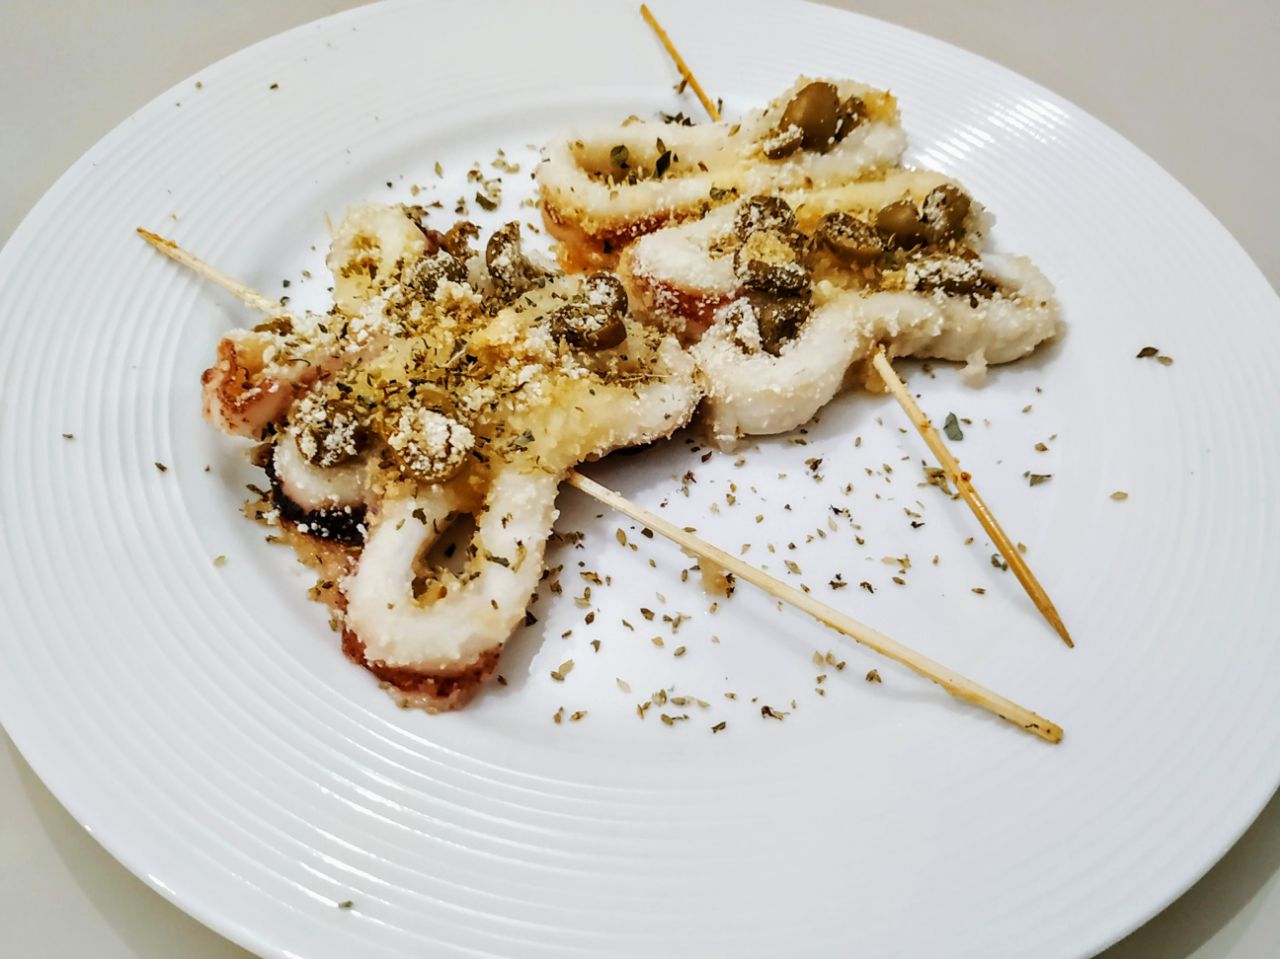 Antipasti a base di pesce: spiedini di anelli di calamaro con pane grattugiato e olive verdi!